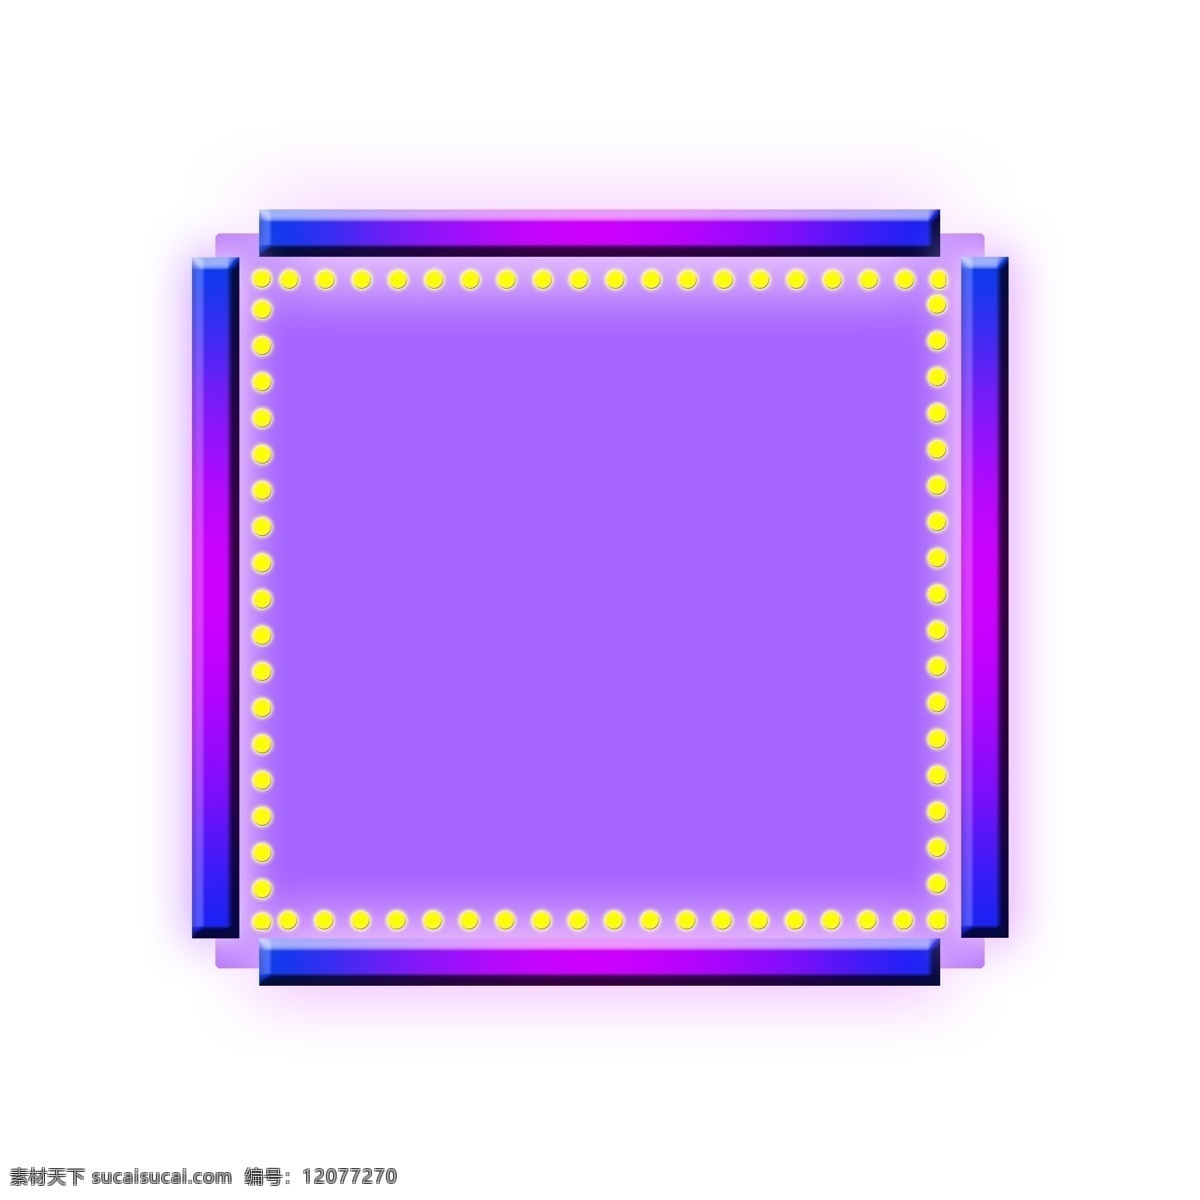 科技 感 电商 方形 立体 紫色 蓝色 边框 发光 霓虹灯 科技感 淘宝 天猫 方形边框 撞 色 外发光 灯管 炫酷